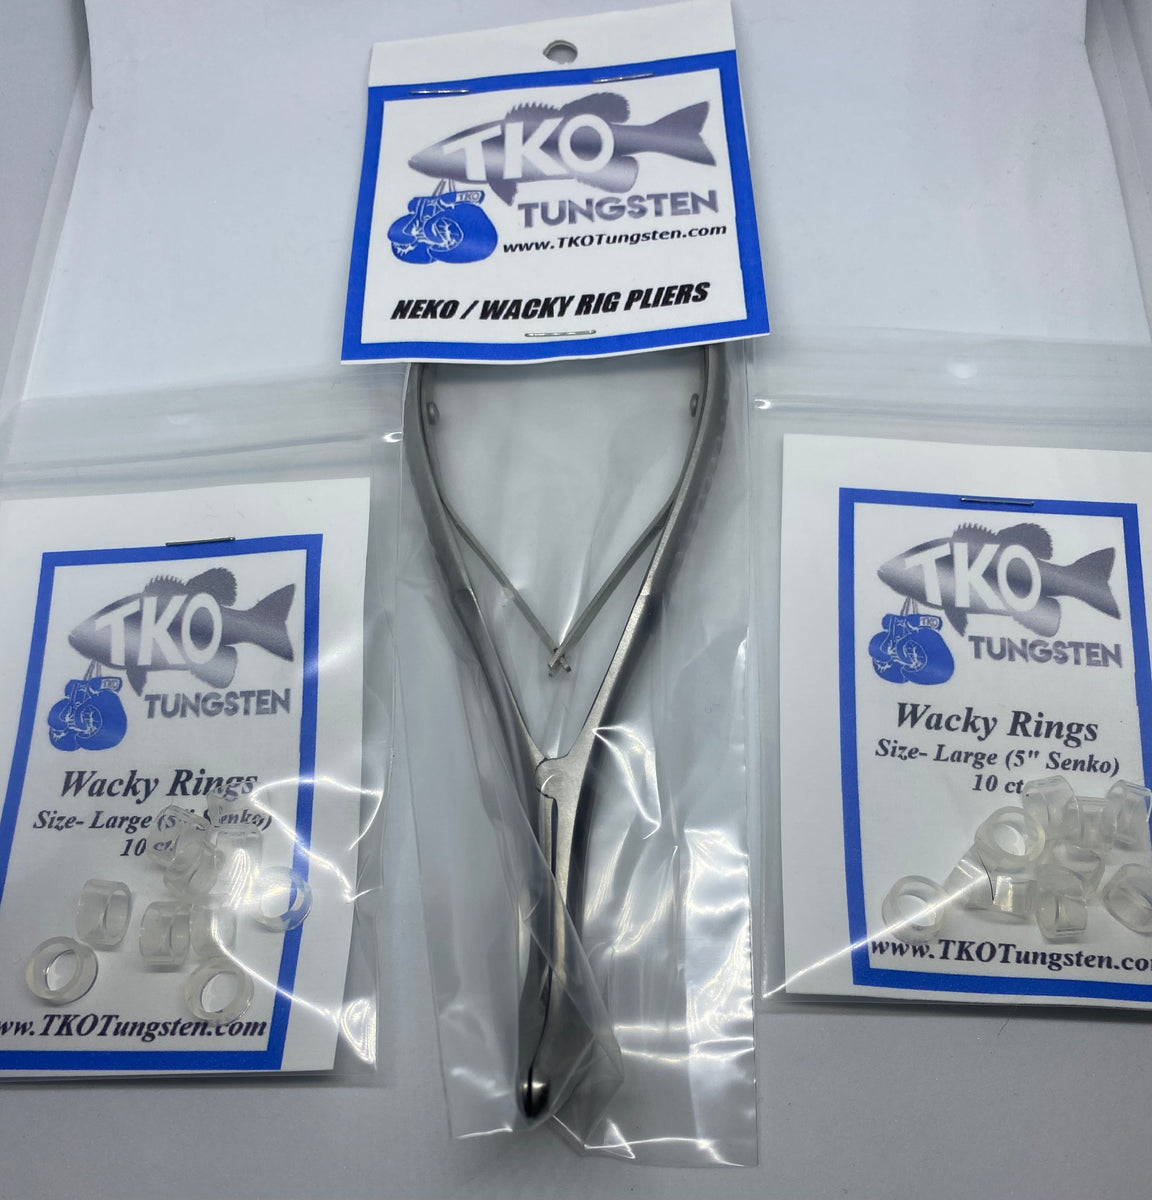 TKO Tungsten Wacky / Neko Ring Kit (Pliers & O Rings) Fast Shipping!!!